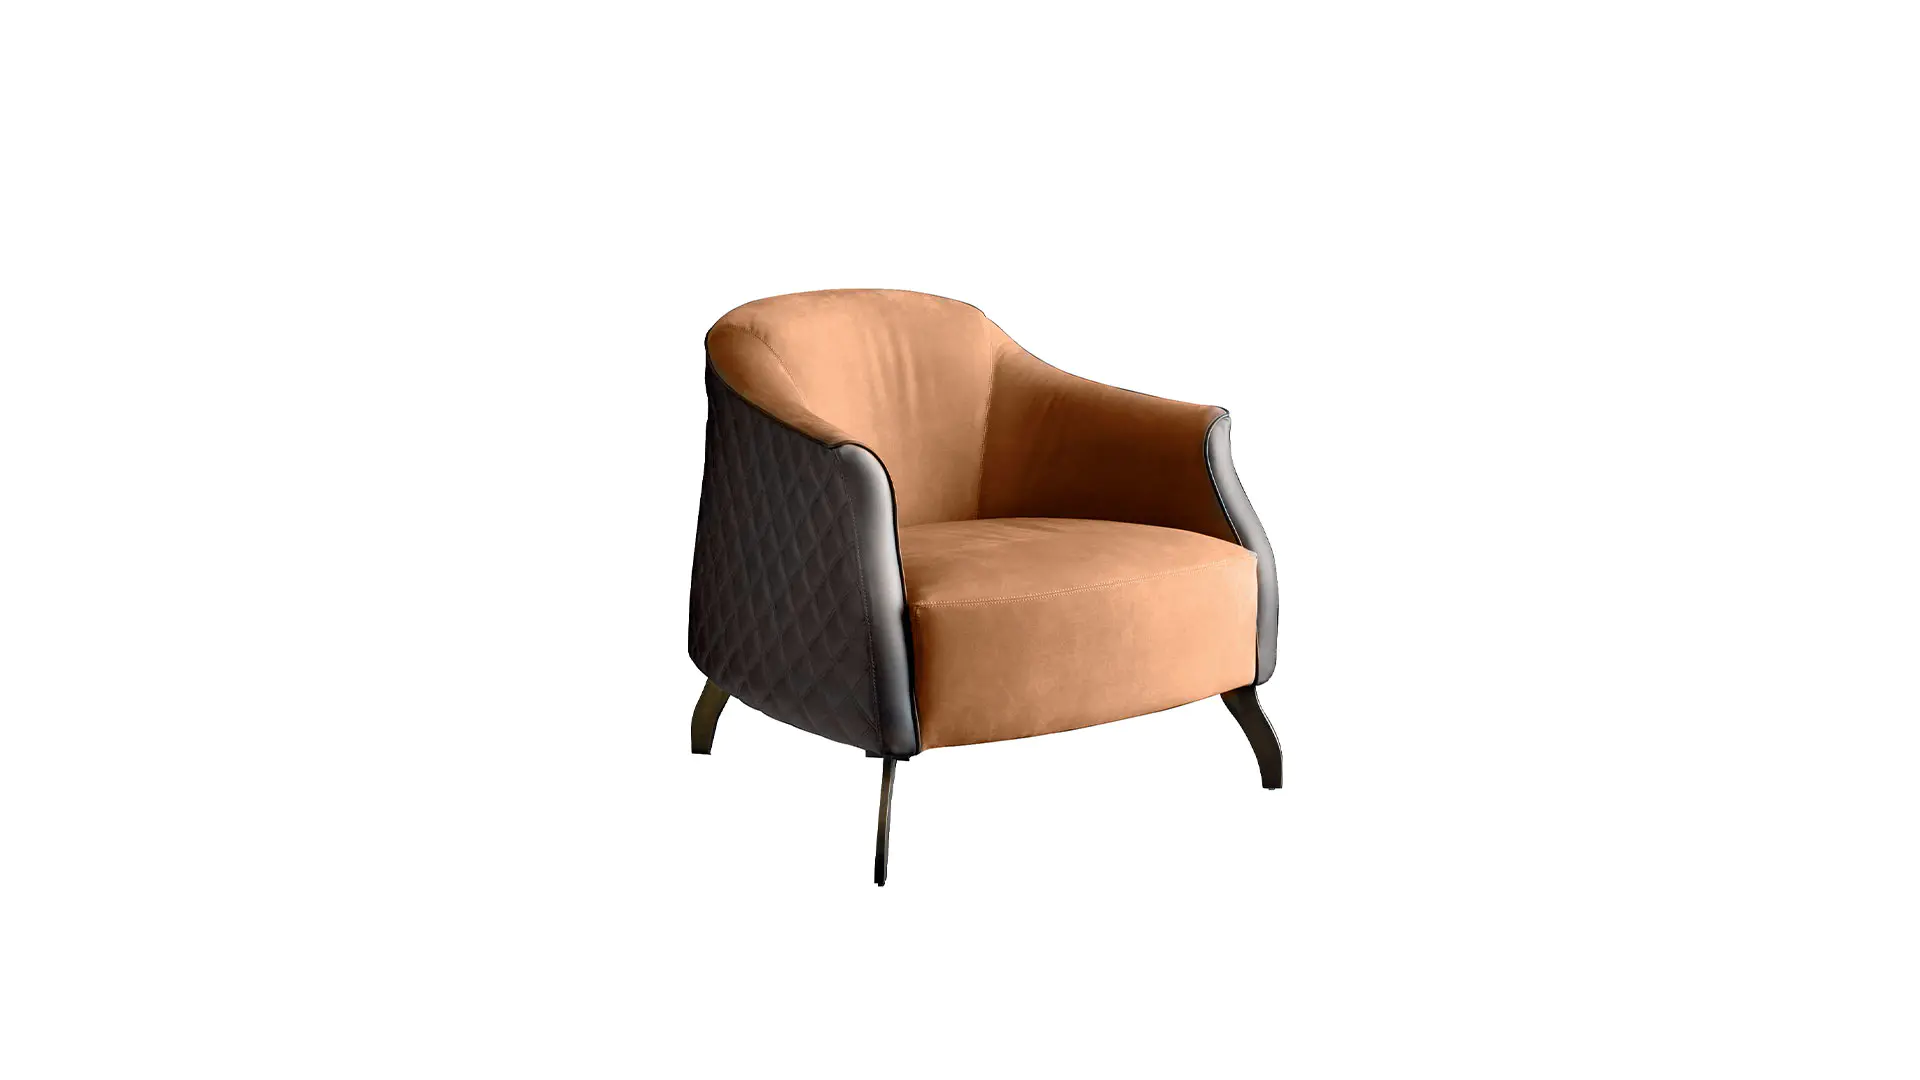 Luxury Relax Orange Leisure Hotel Furniture Metal Frame Modern Simple Custom Armchair